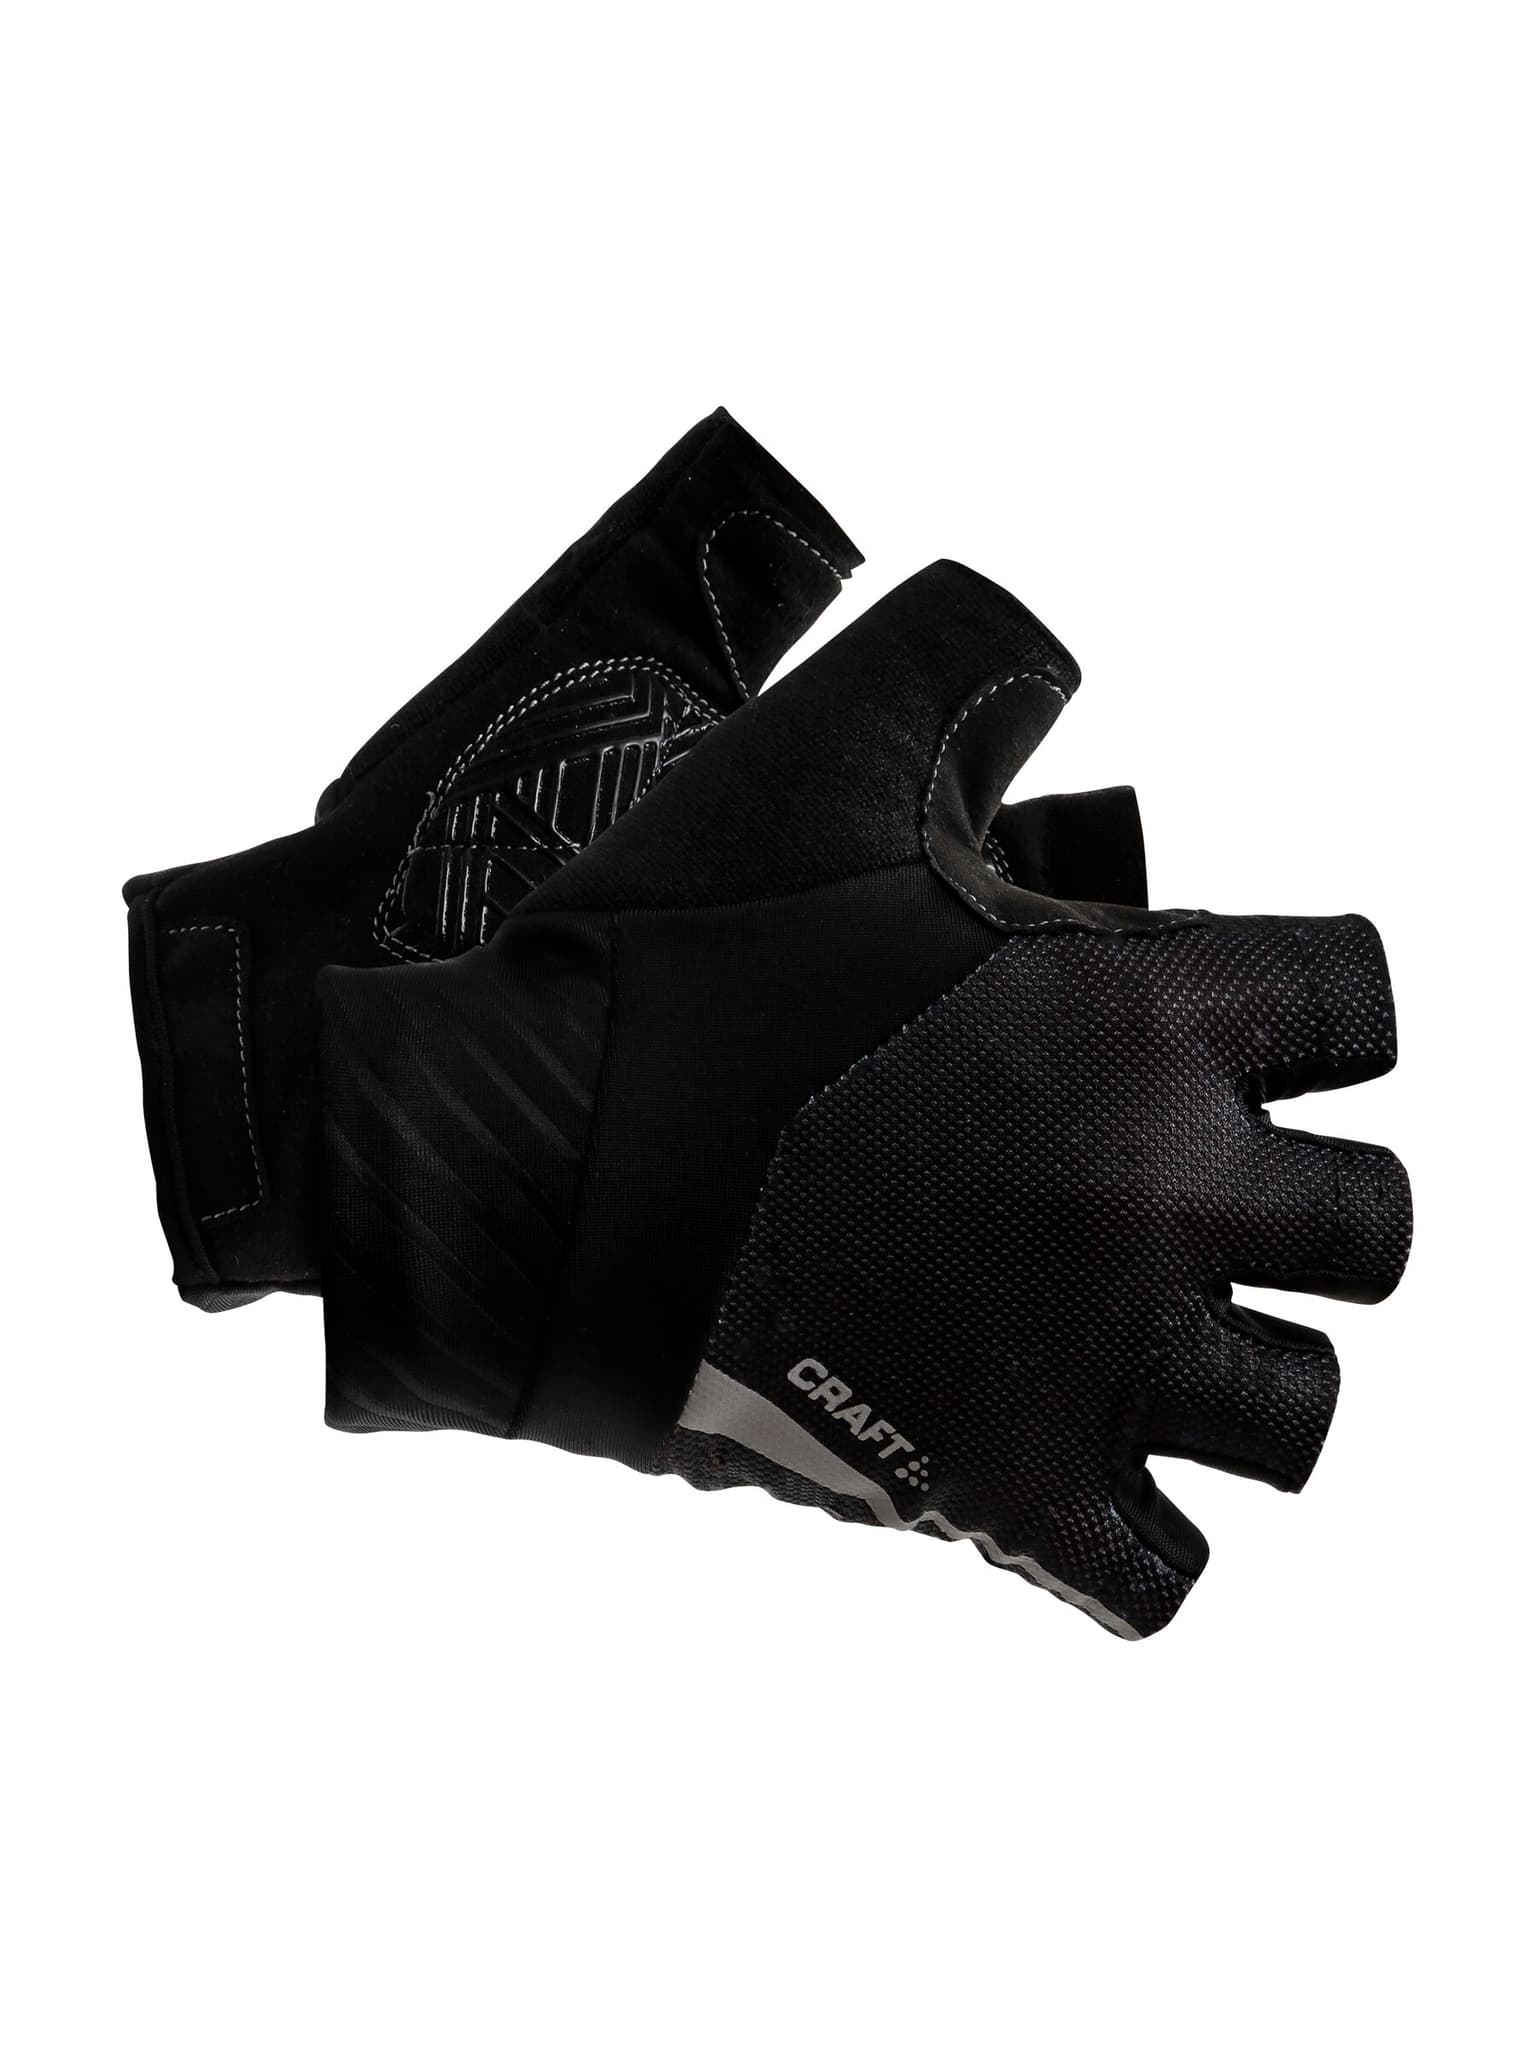 Craft Craft Adv Rouleur Glove Handschuhe noir 1